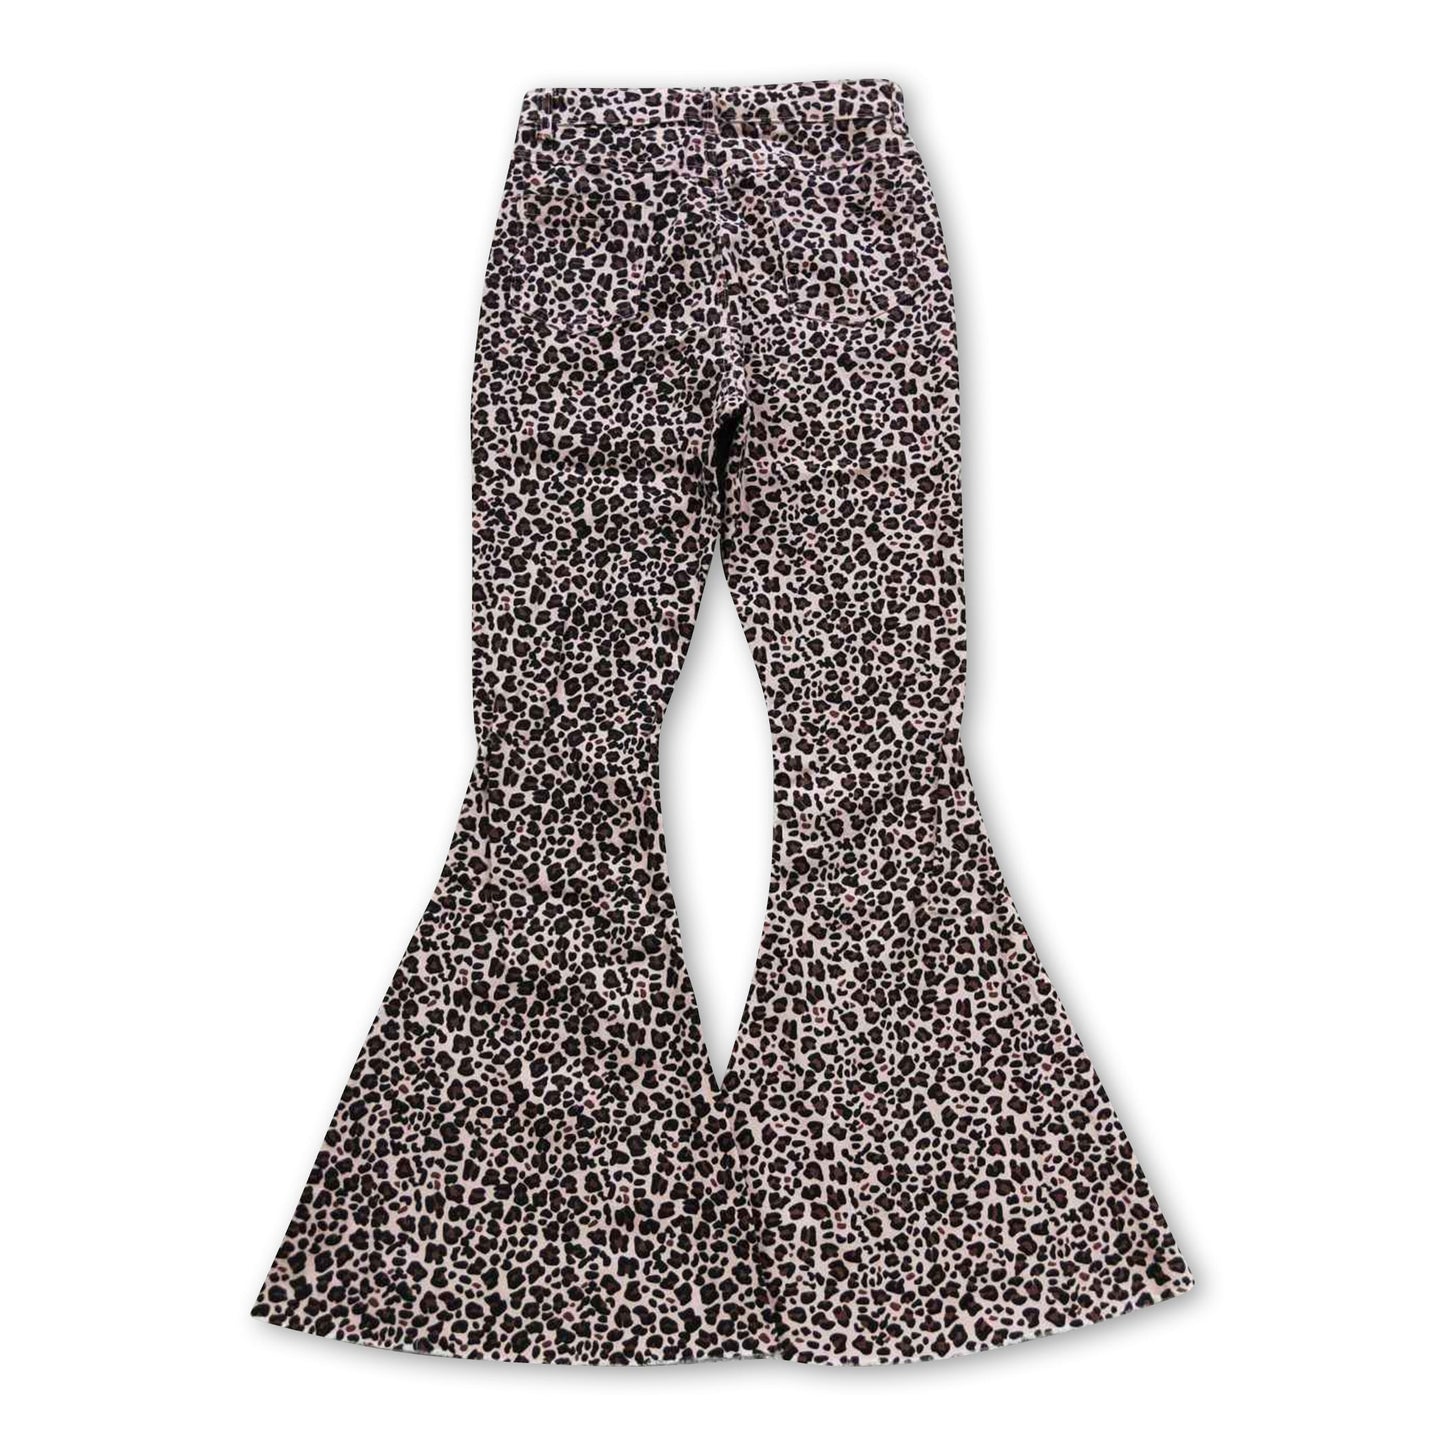 Leopard women denim pants adult jeans